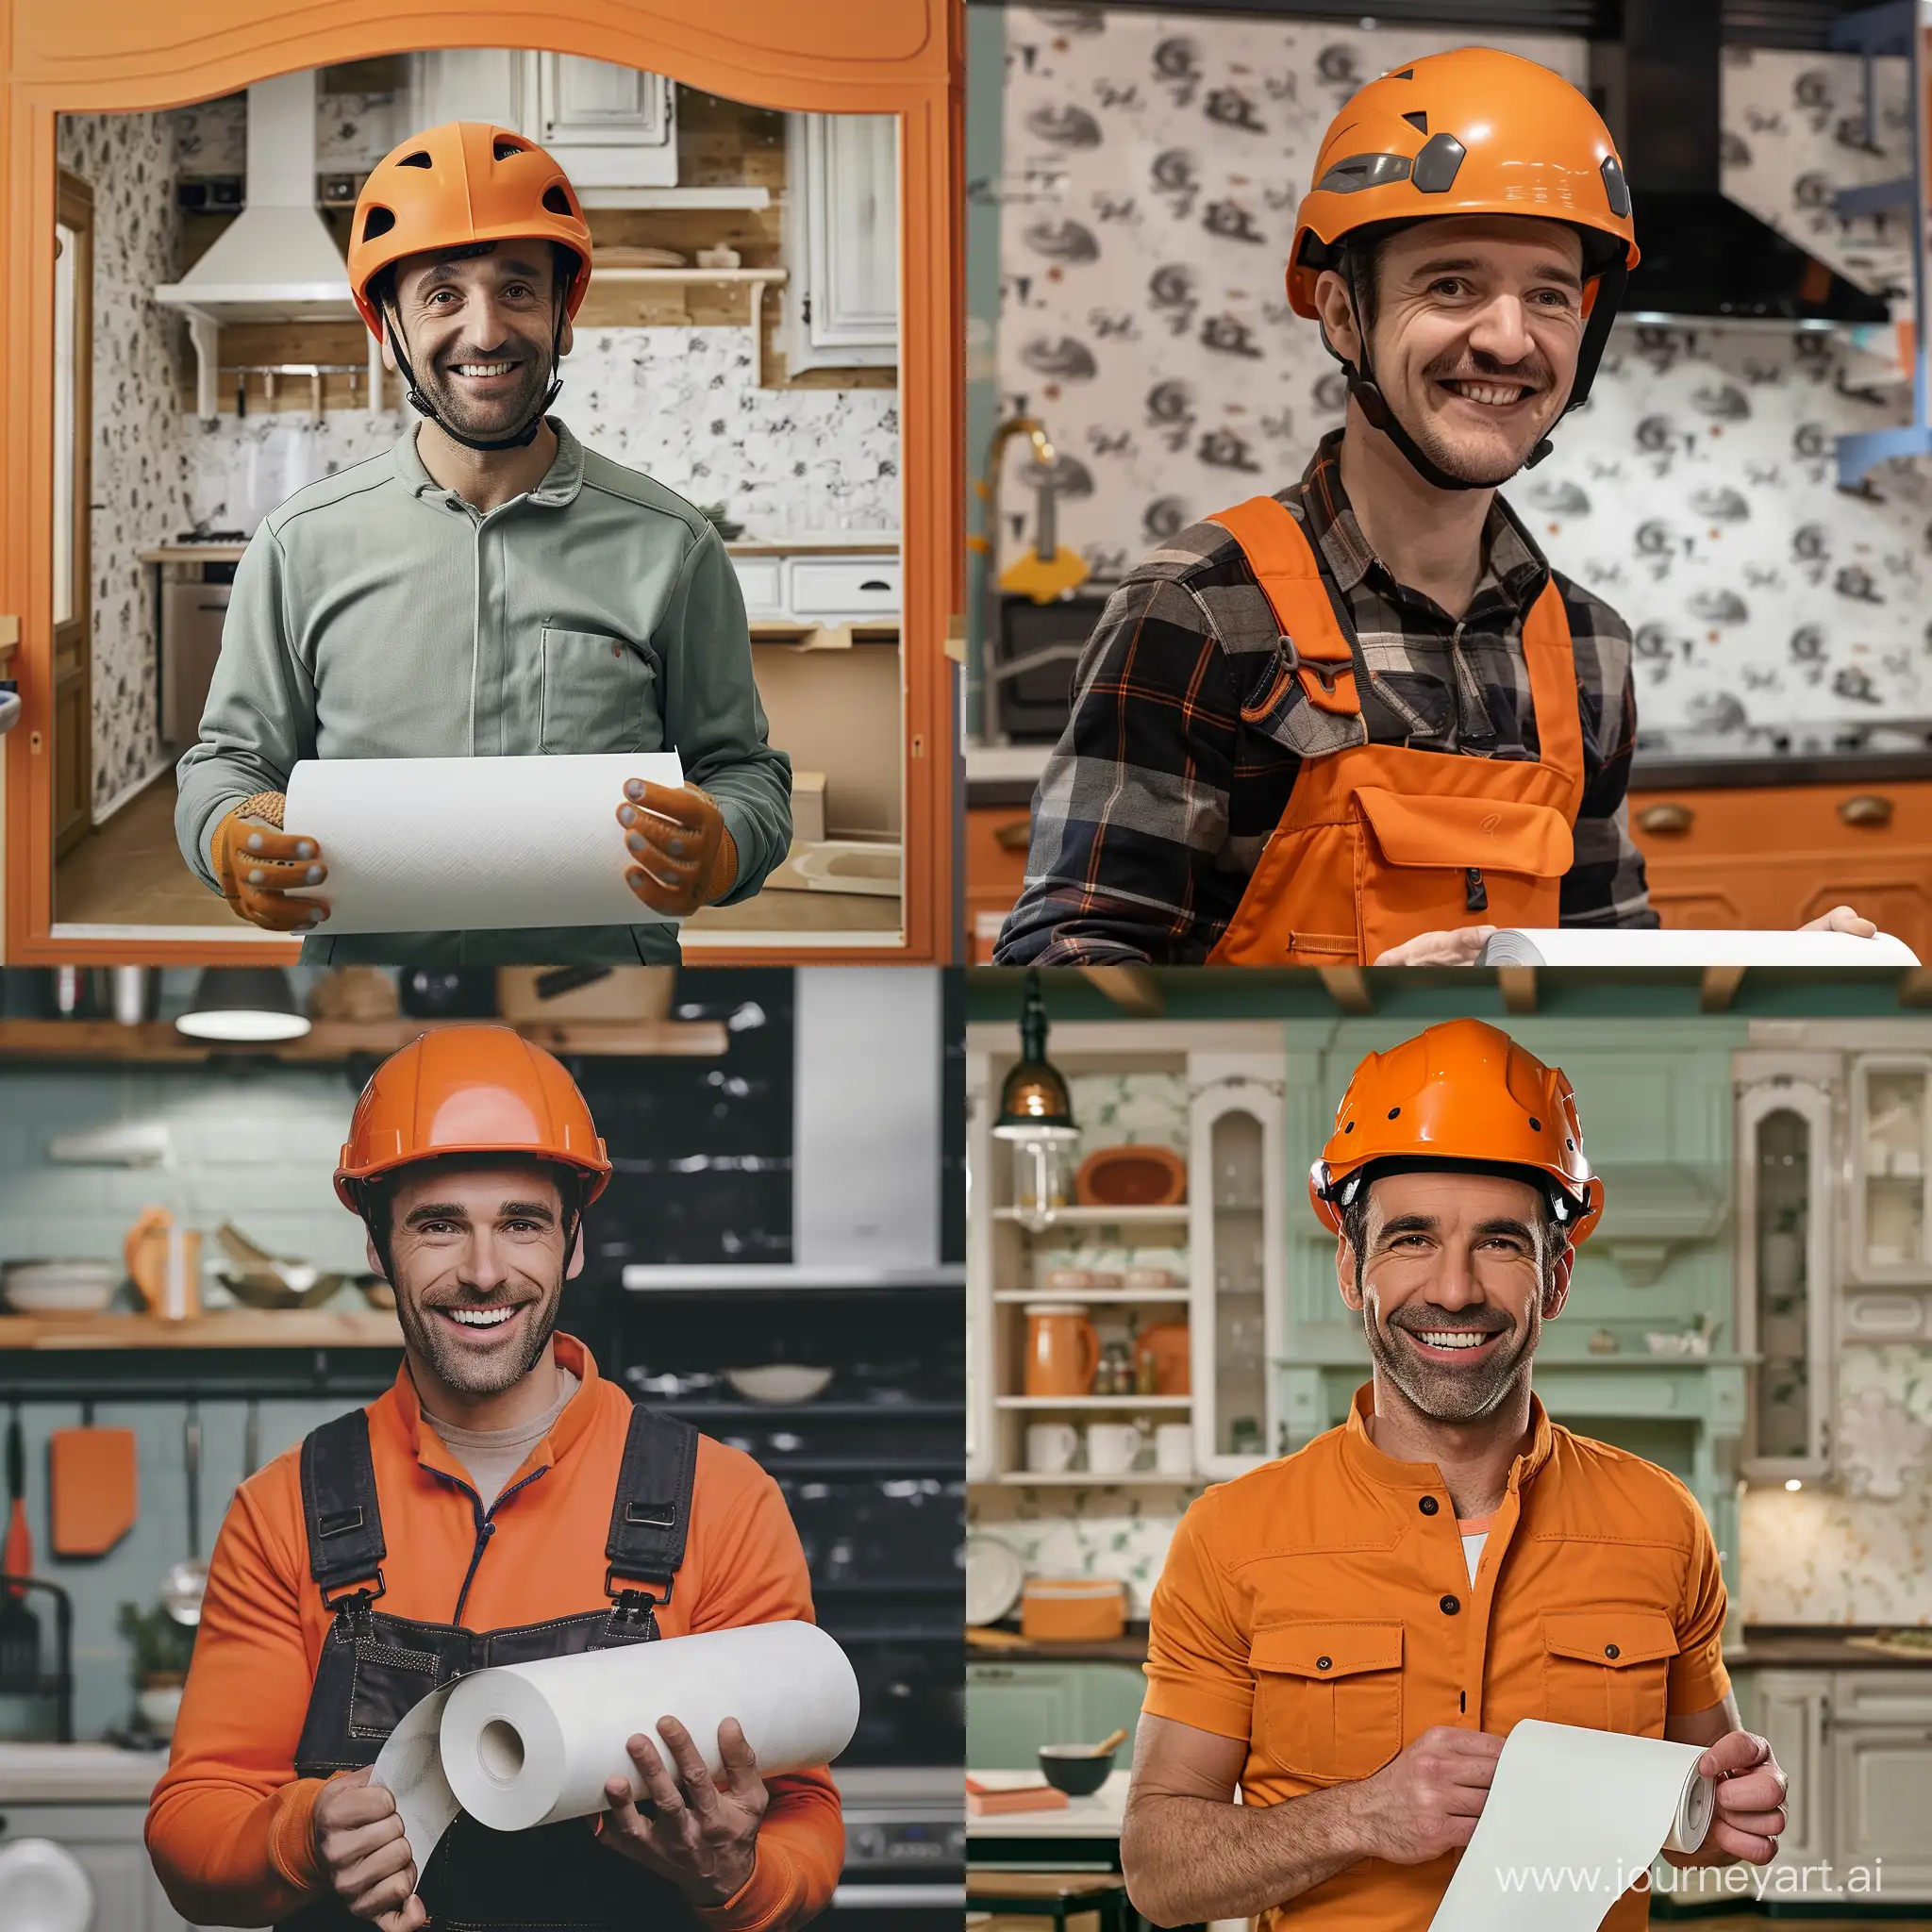 Мужчина улыбается в оранжевой каске, держит в руках рулон белых обоев, на фоне кухонный гарнитур